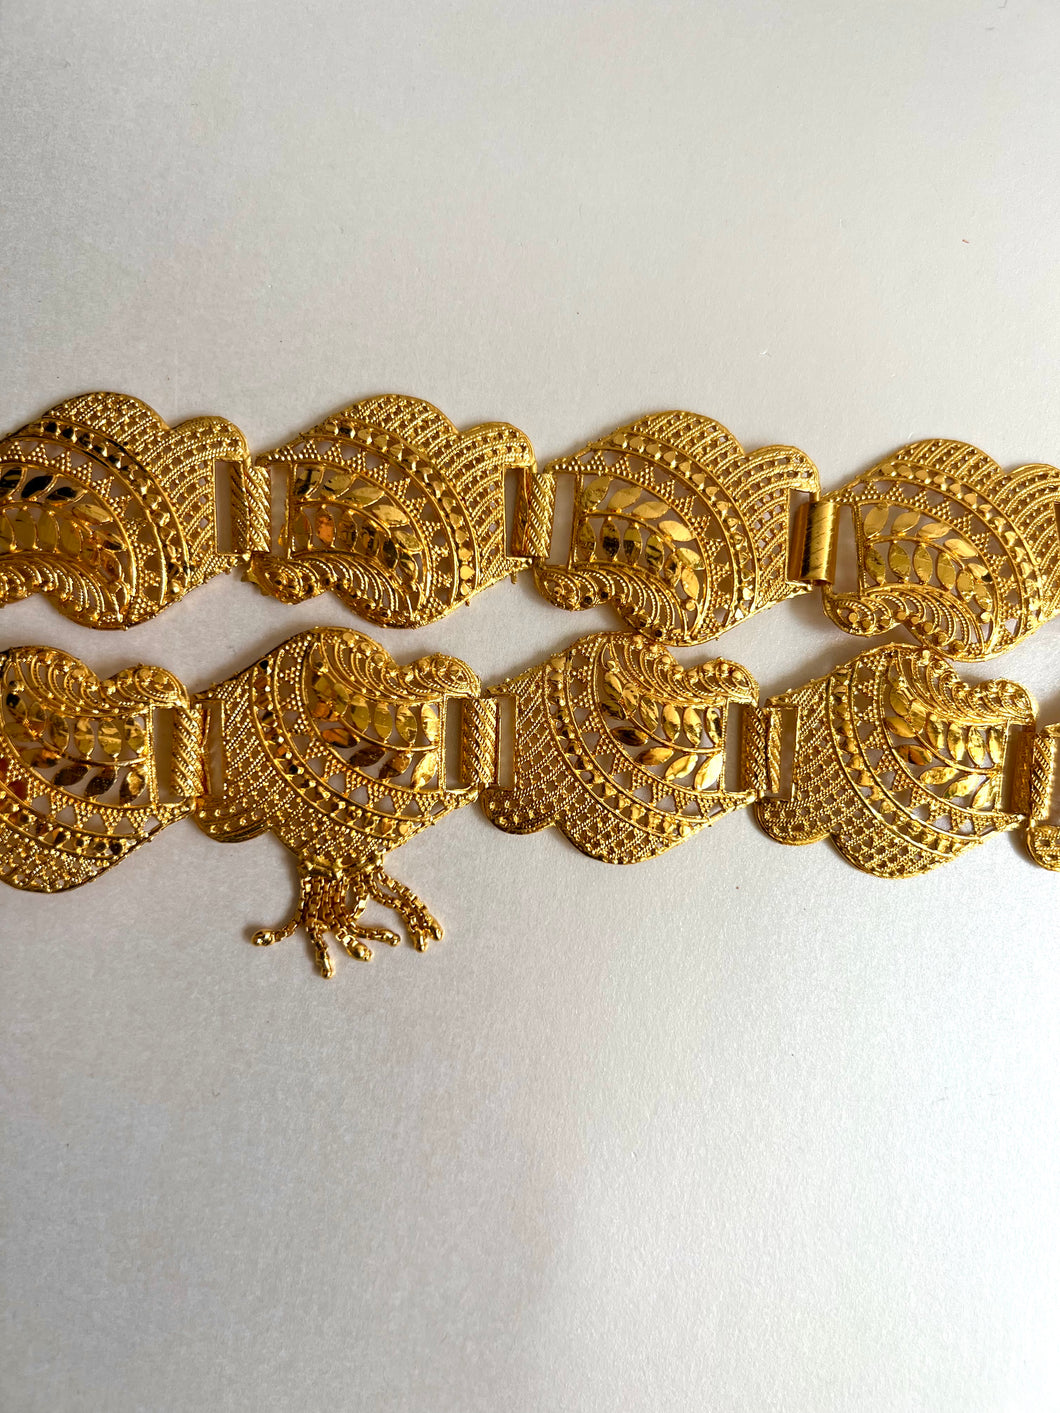 Gold floral belt